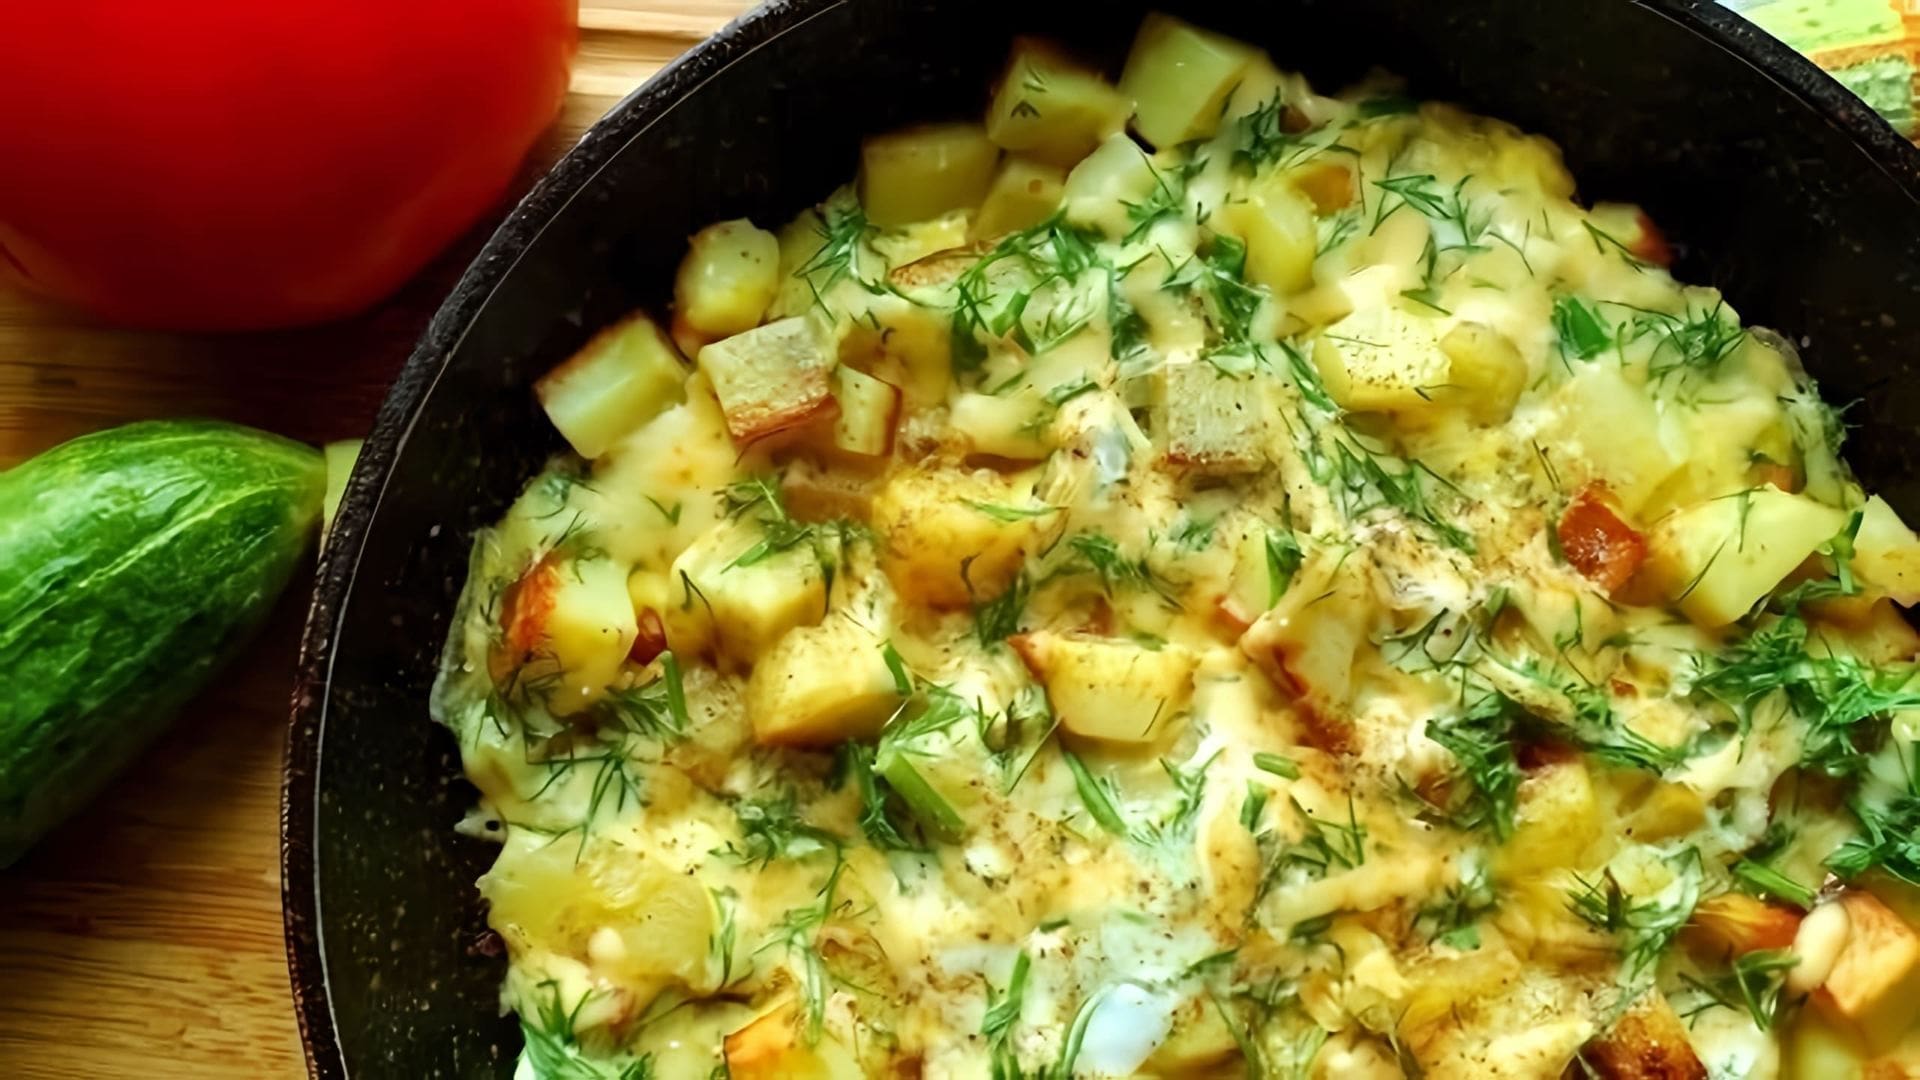 В этом видео демонстрируется процесс приготовления картофеля с сыром на сковороде